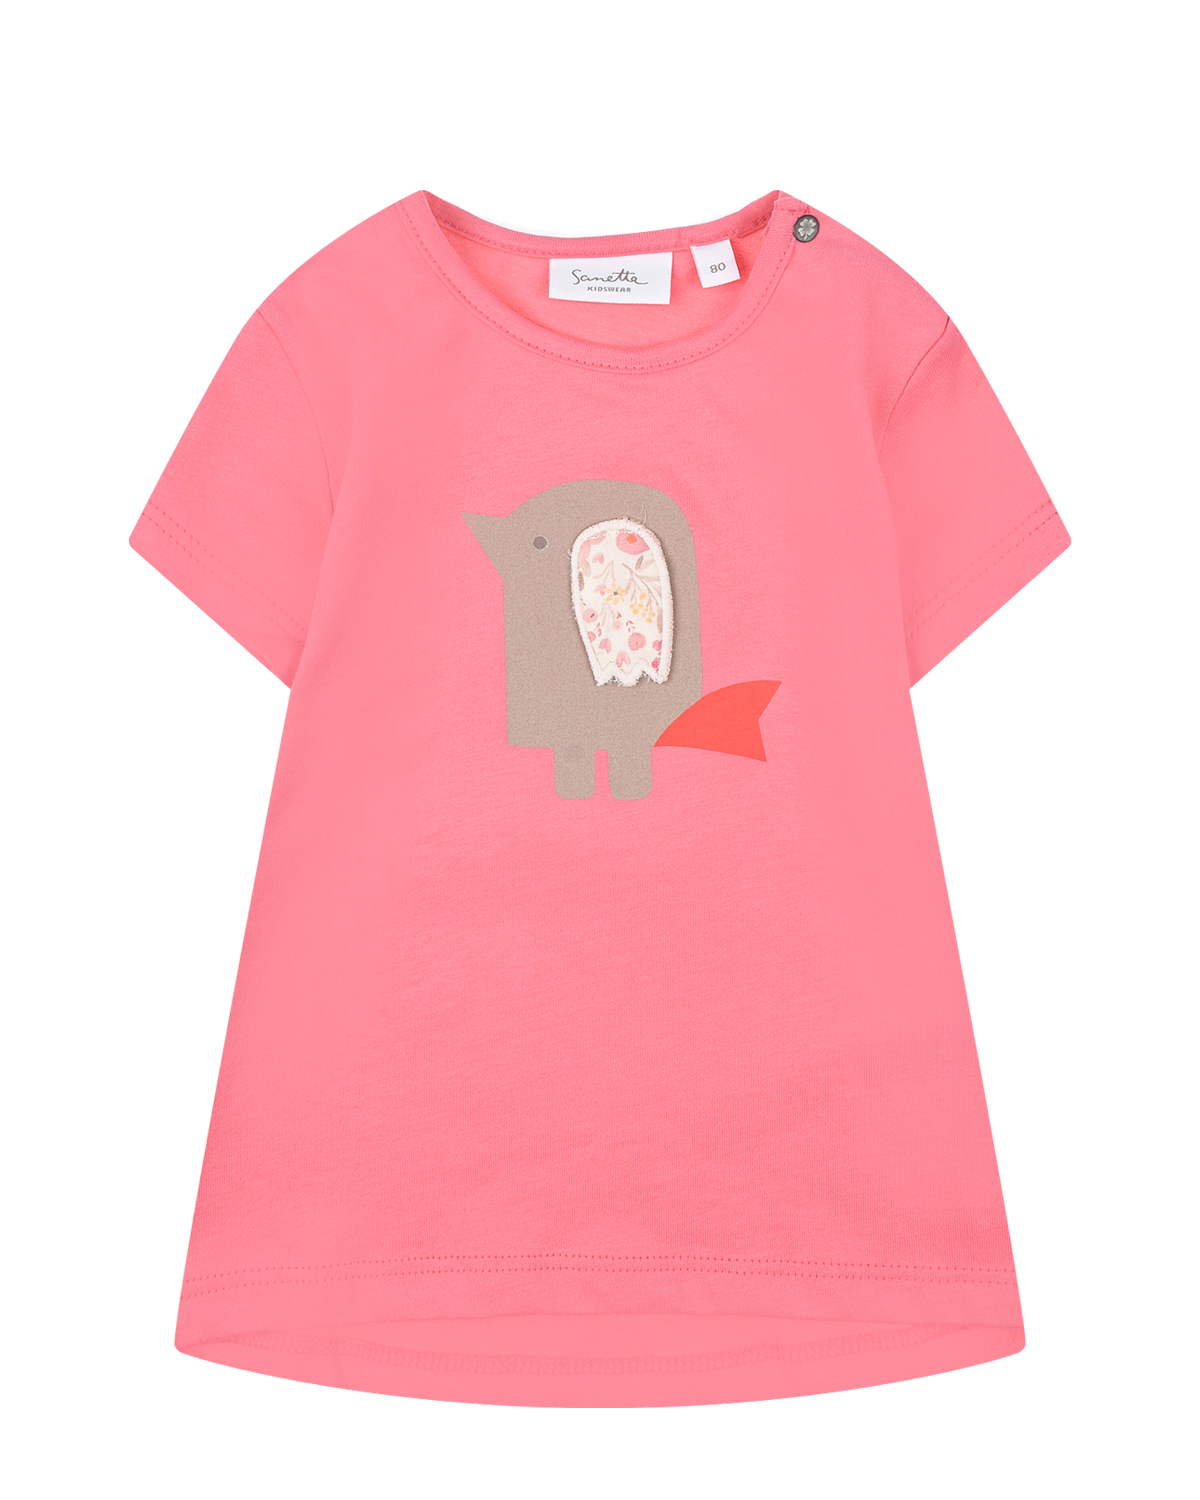 Розовая футболка с принтом "птица" Sanetta Kidswear